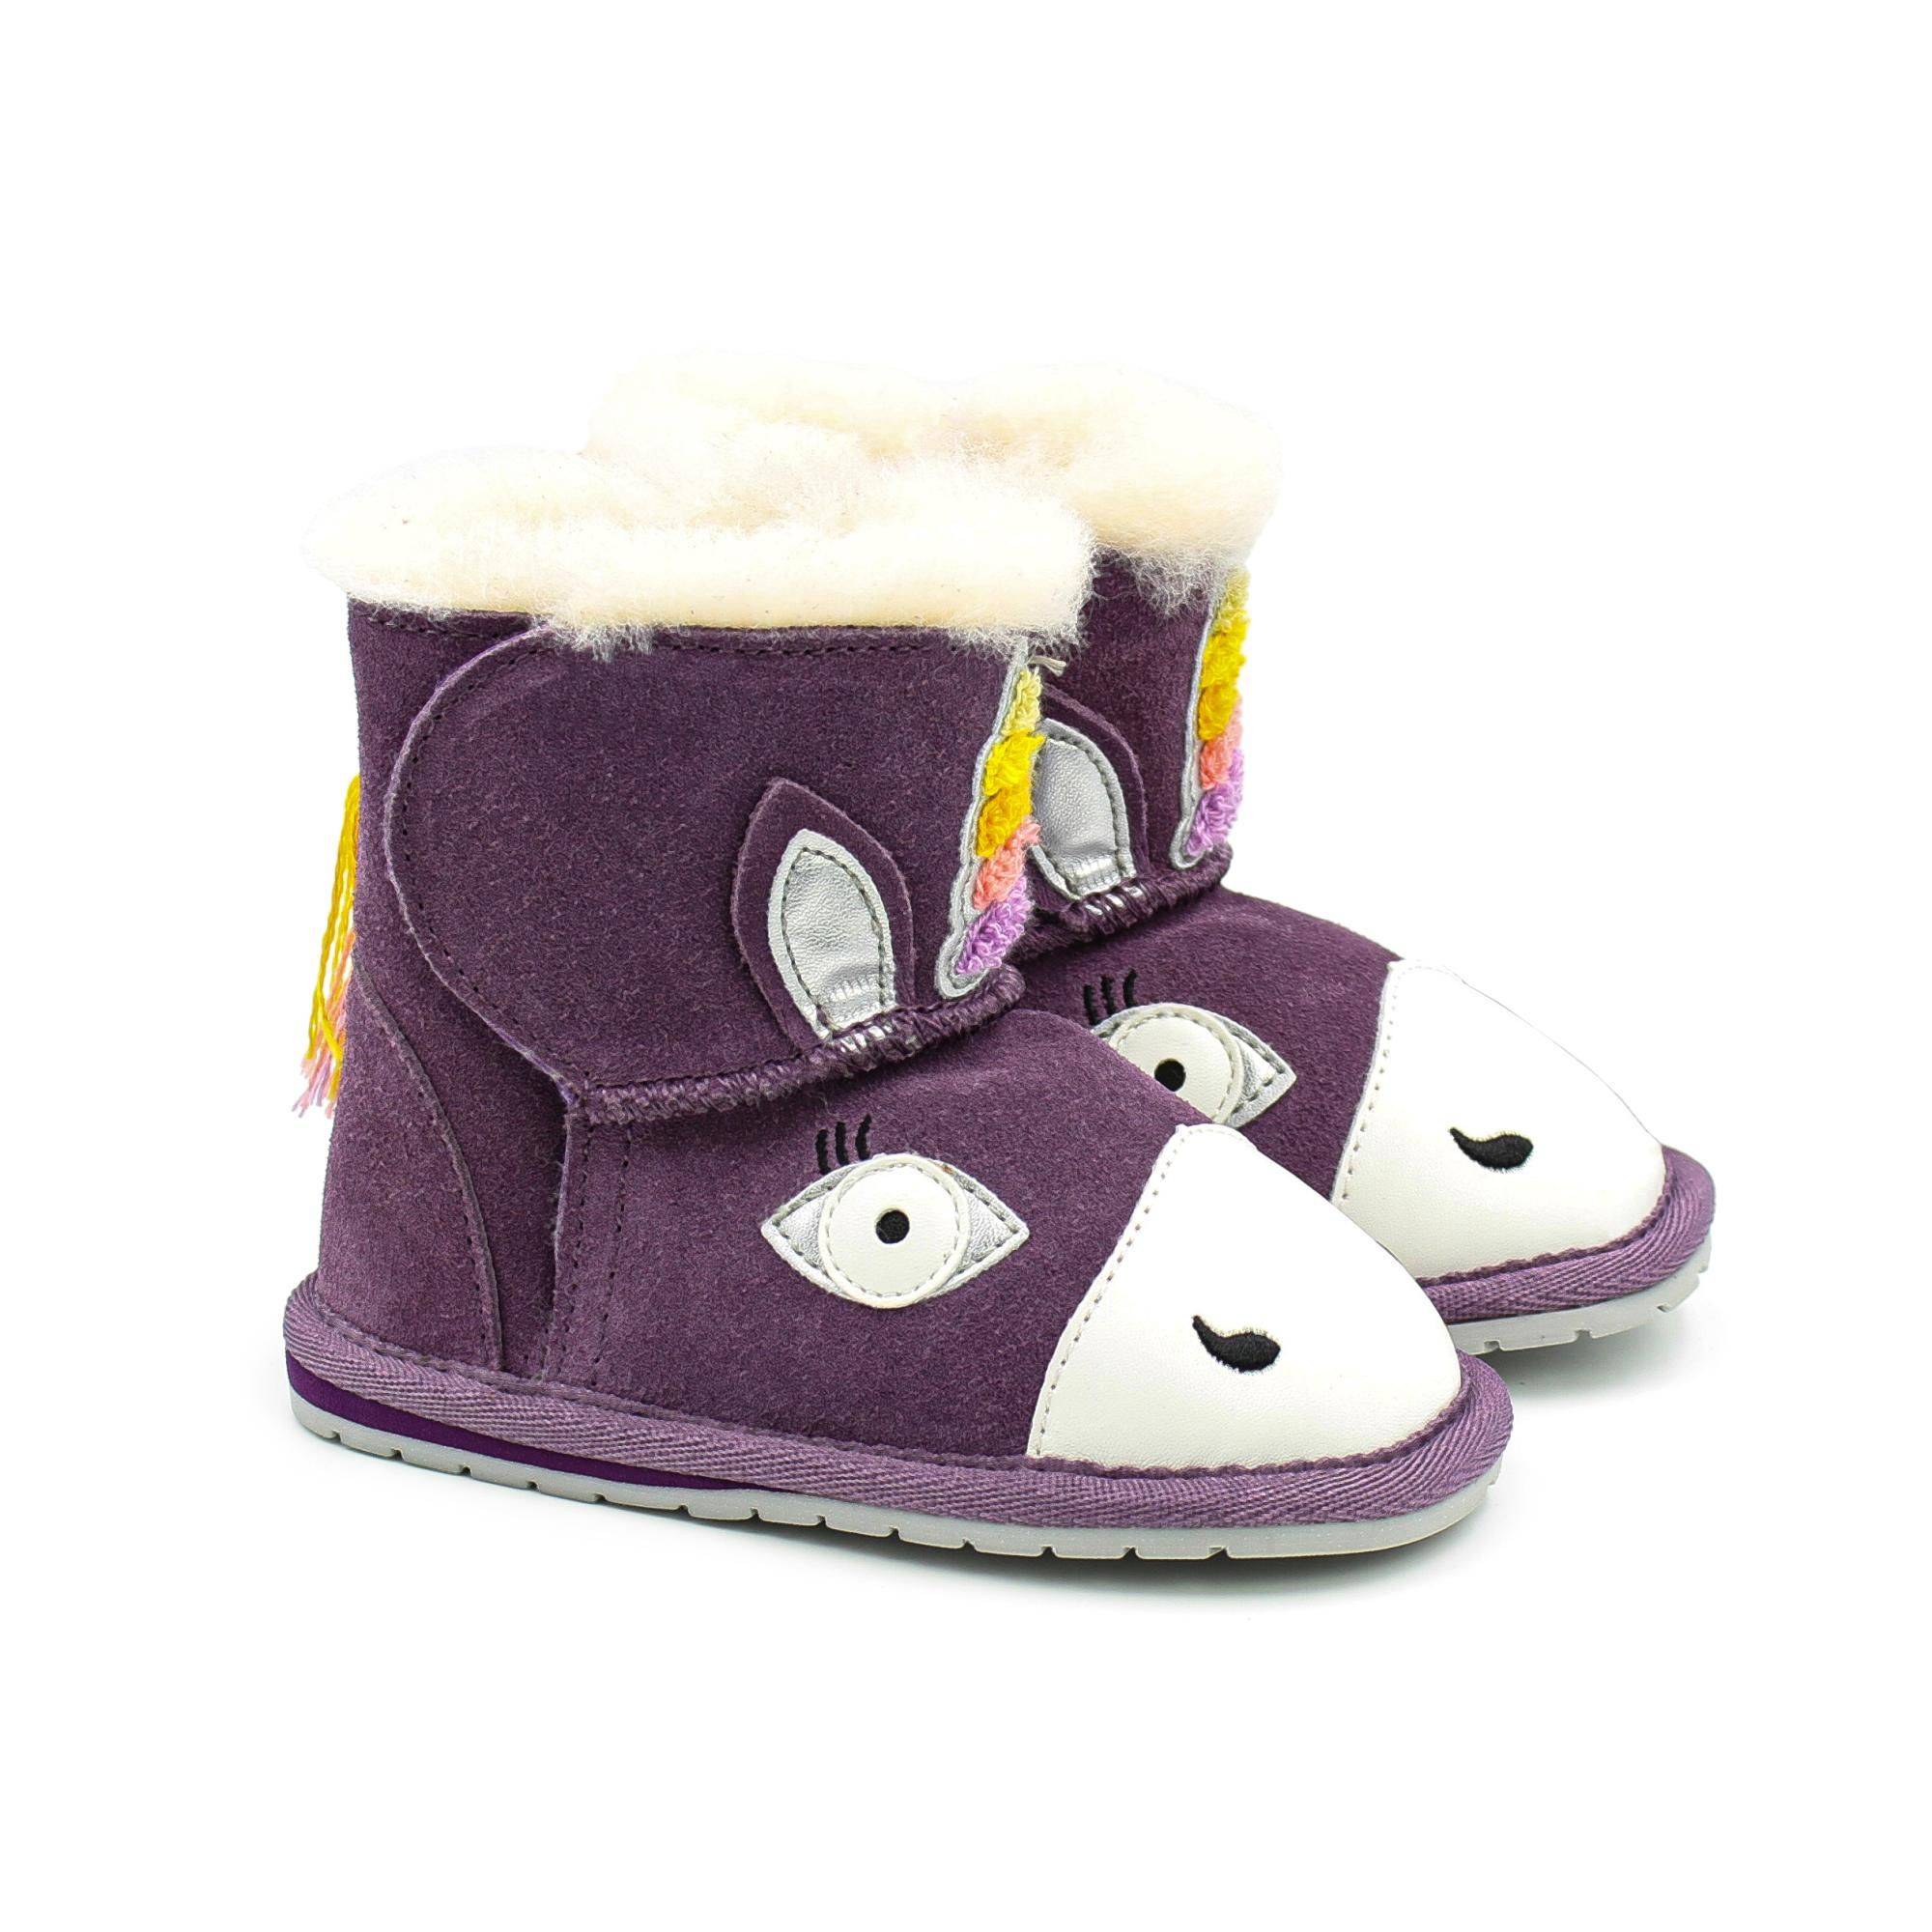 Детские ботинки из овчины (угги) EMU Australia(Magical Unicorn Walker B12409), фиолетовые, цвет фиолетовый, размер 21 - фото 1